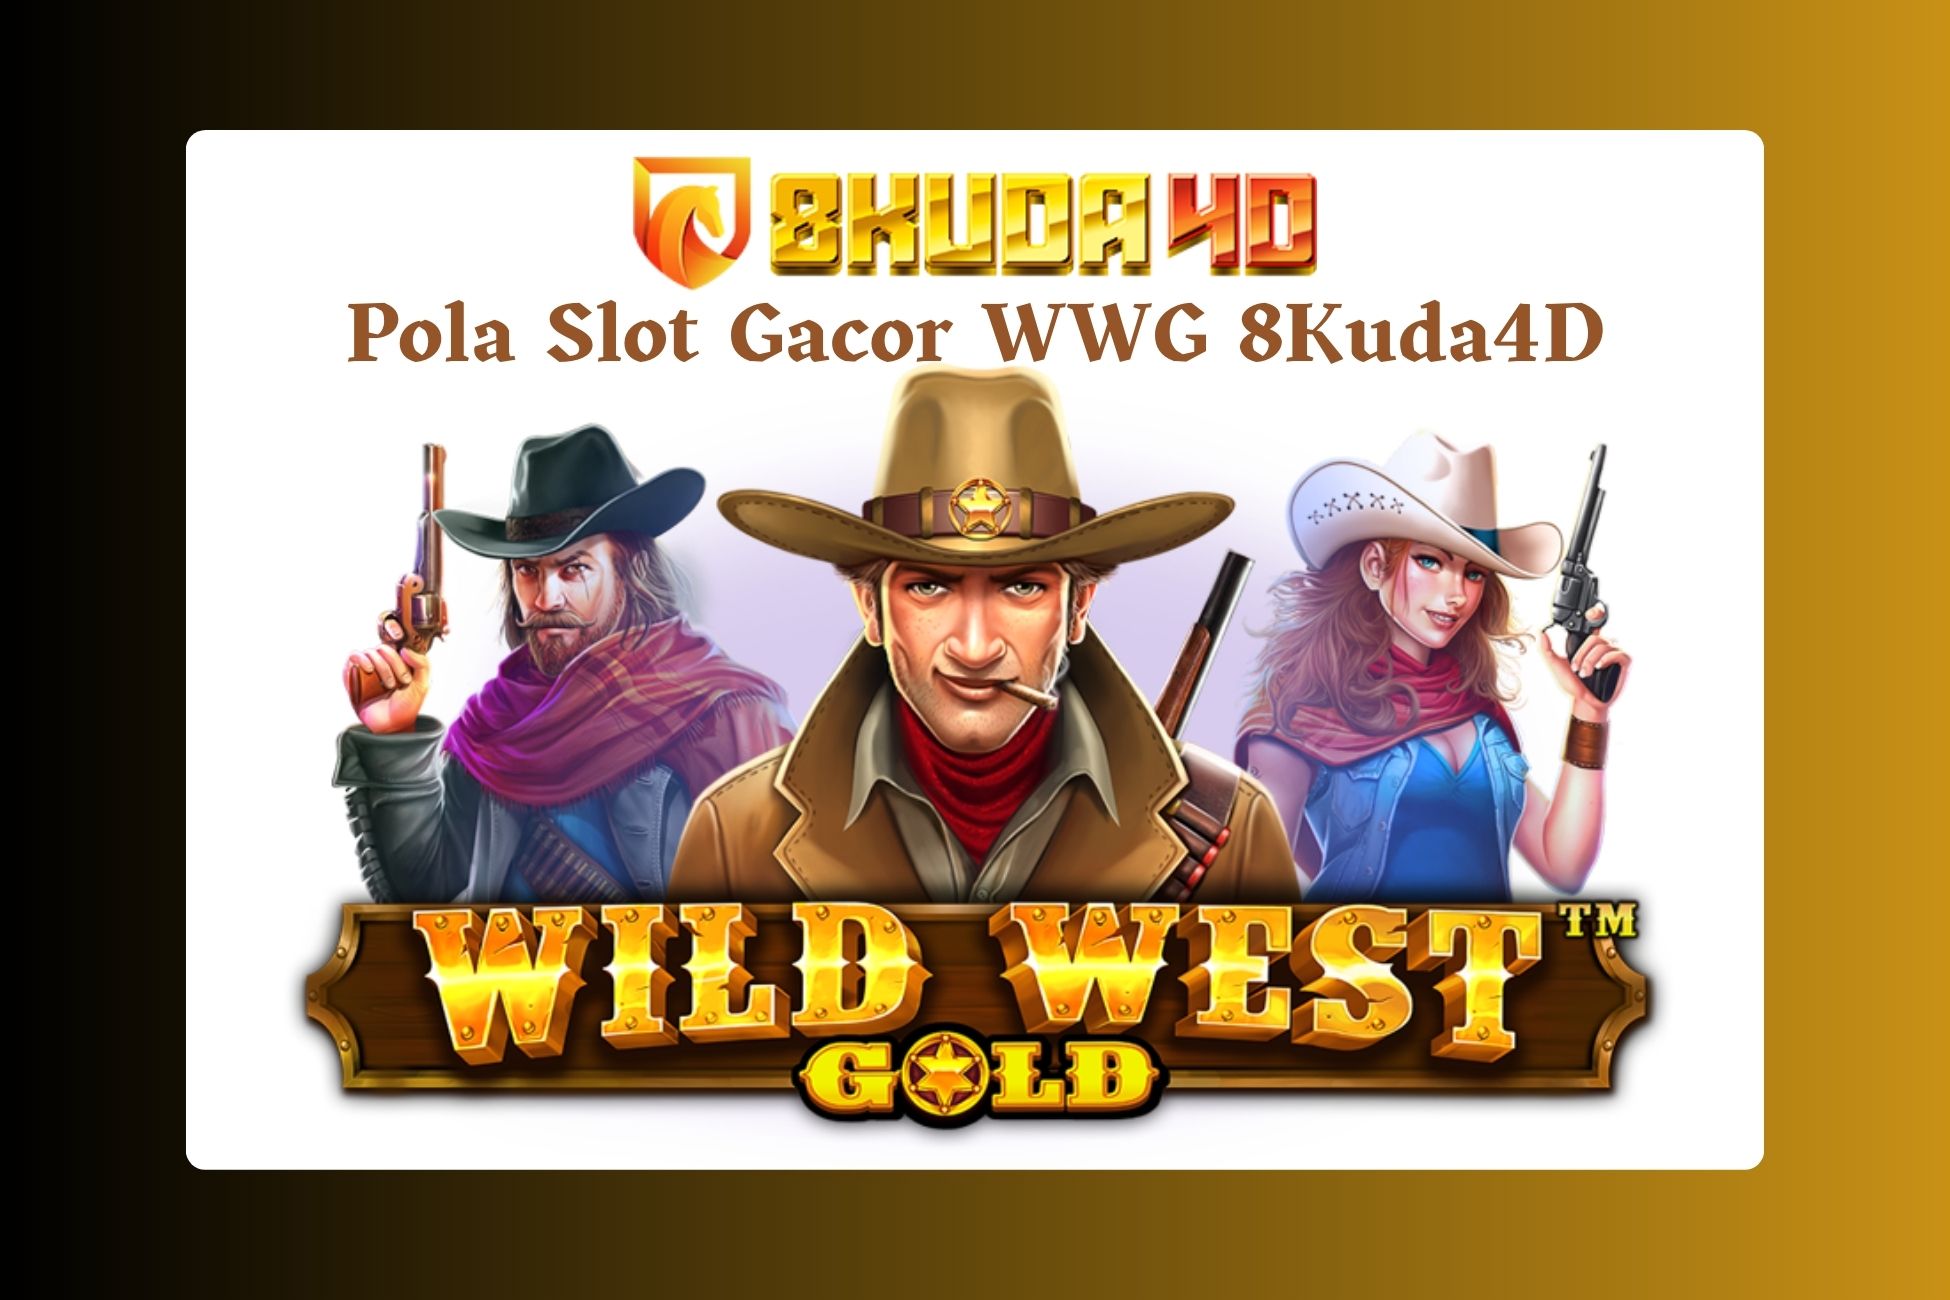 Pola Slot Gacor WWG 8Kuda4D